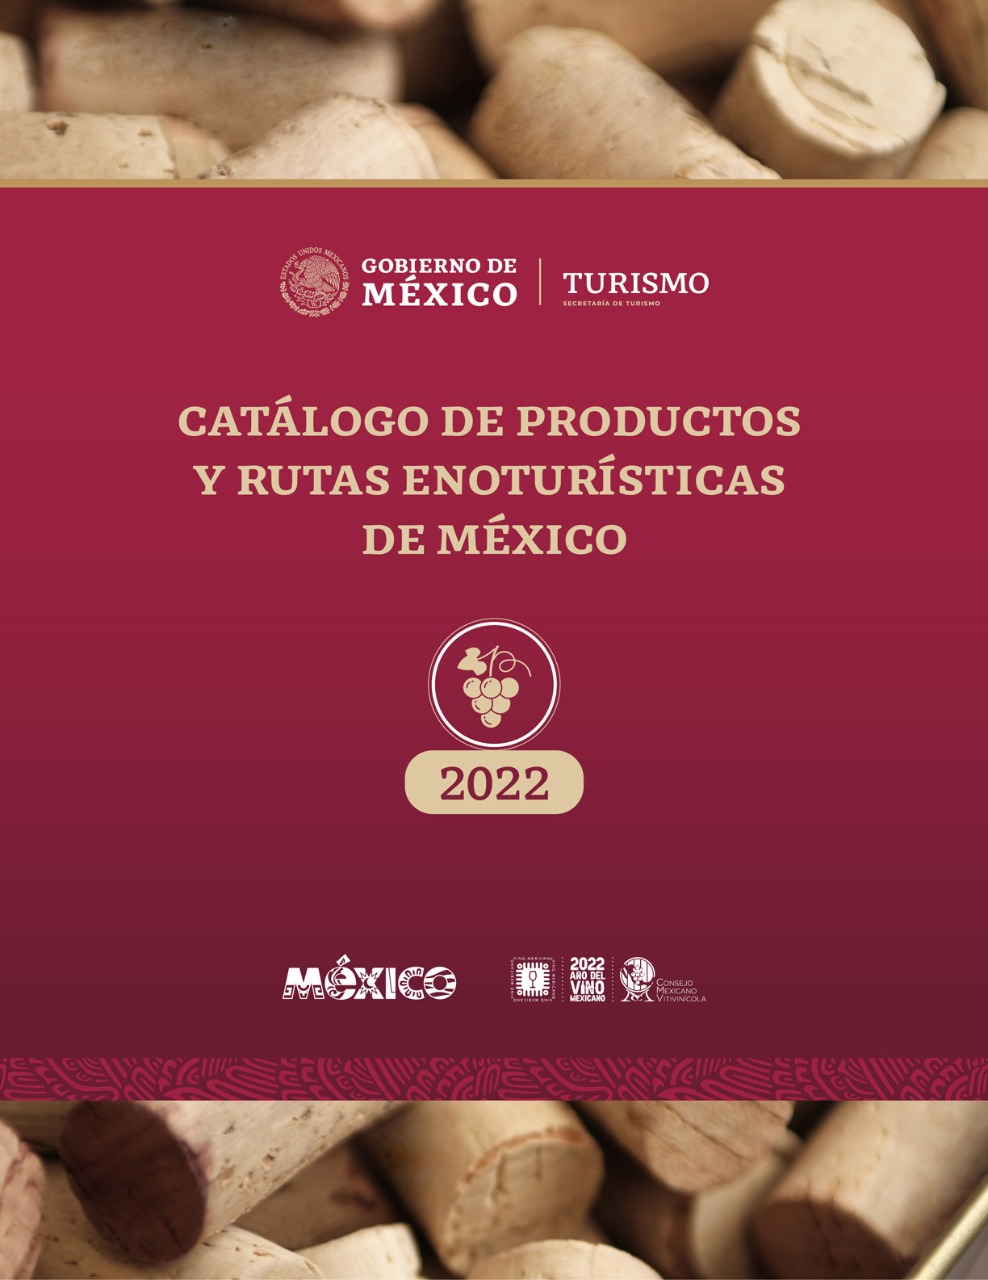 /cms/uploads/image/file/773852/Cat_logo_de_Rutas_y_Productos_Enotur_sticos_de_M_xico___7_.jpg